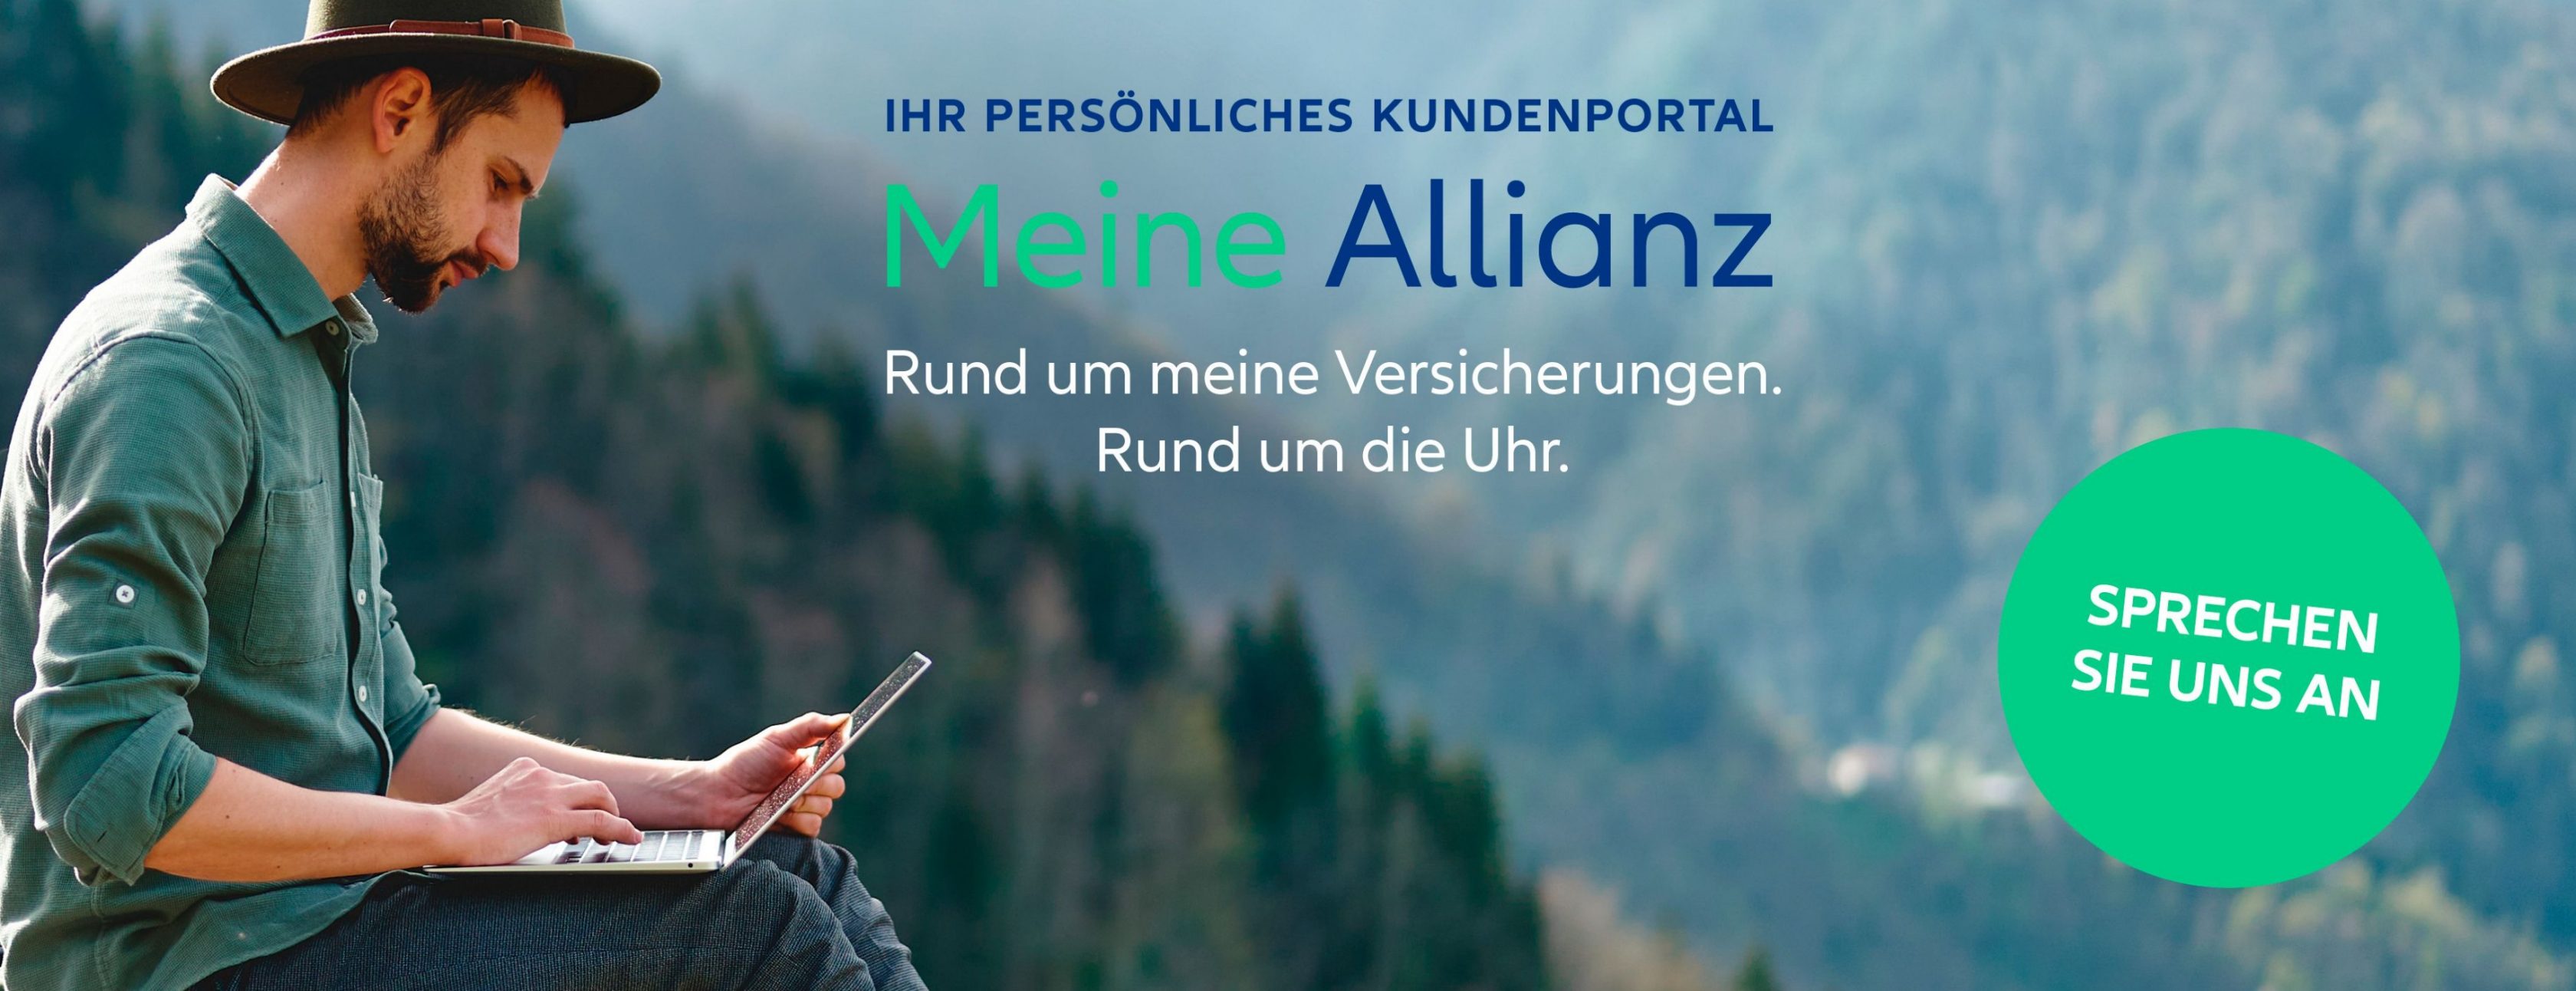 Allianz Versicherung Tim Häfele Ulm - Weihnachten